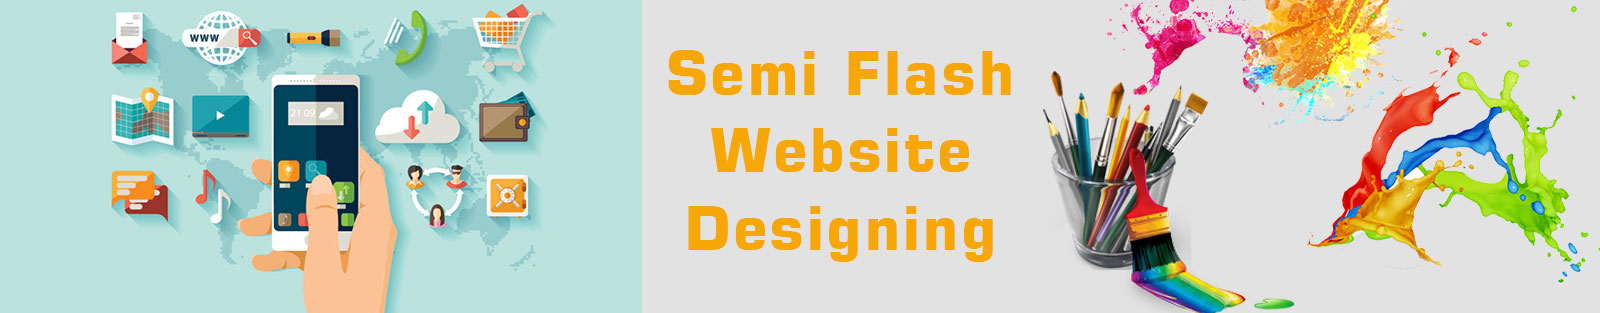 Semi Flash Website Designing